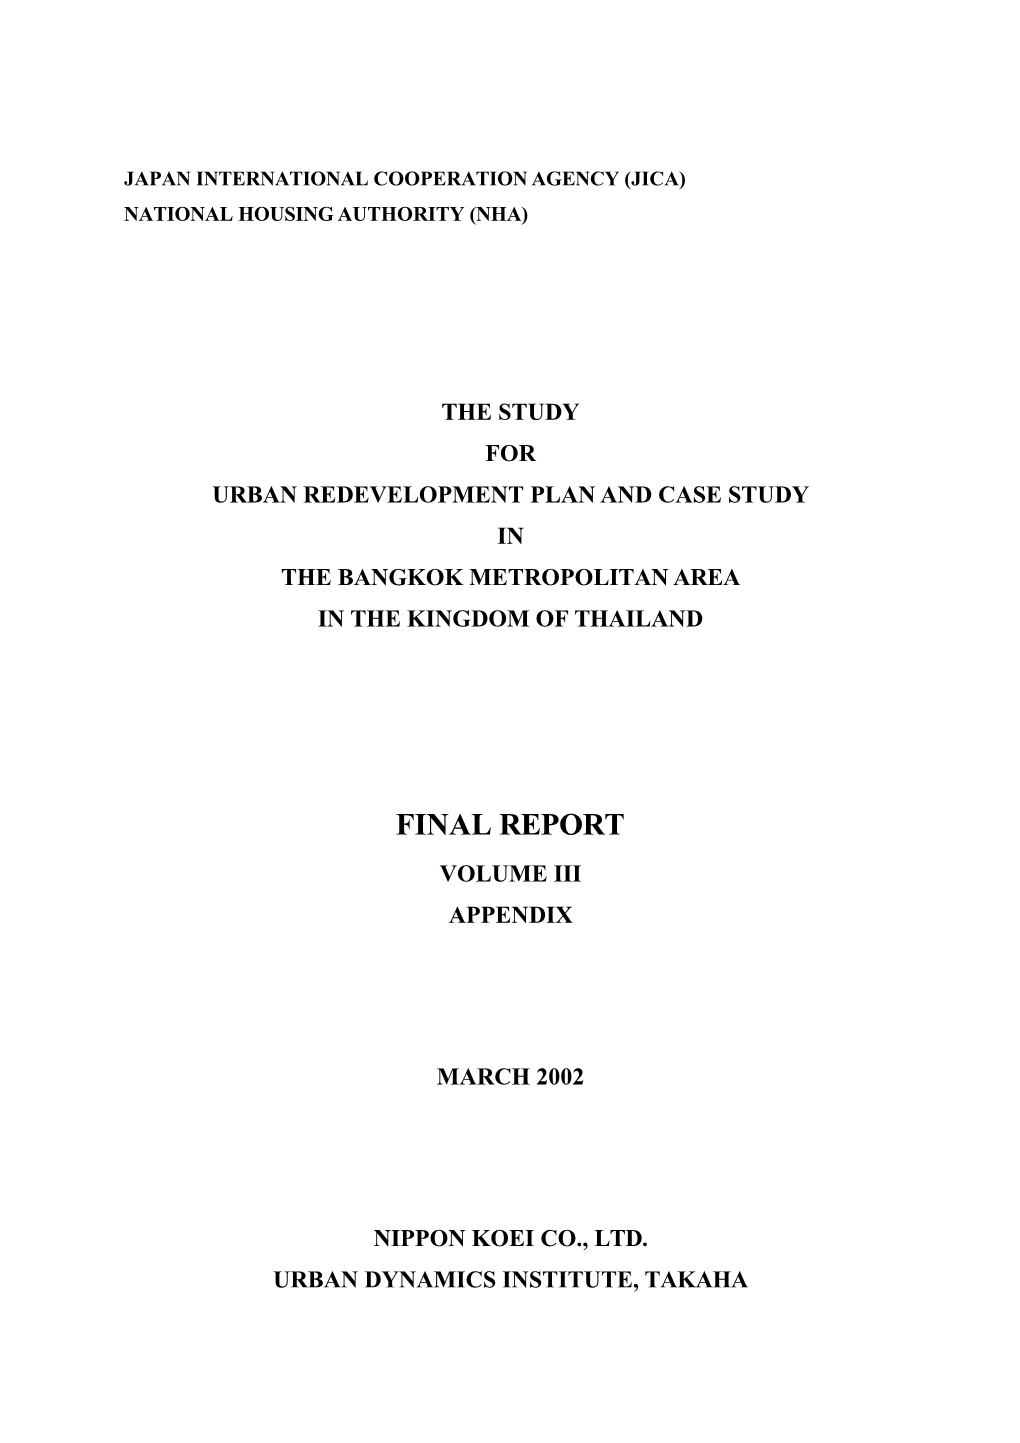 Final Report Volume Iii Appendix